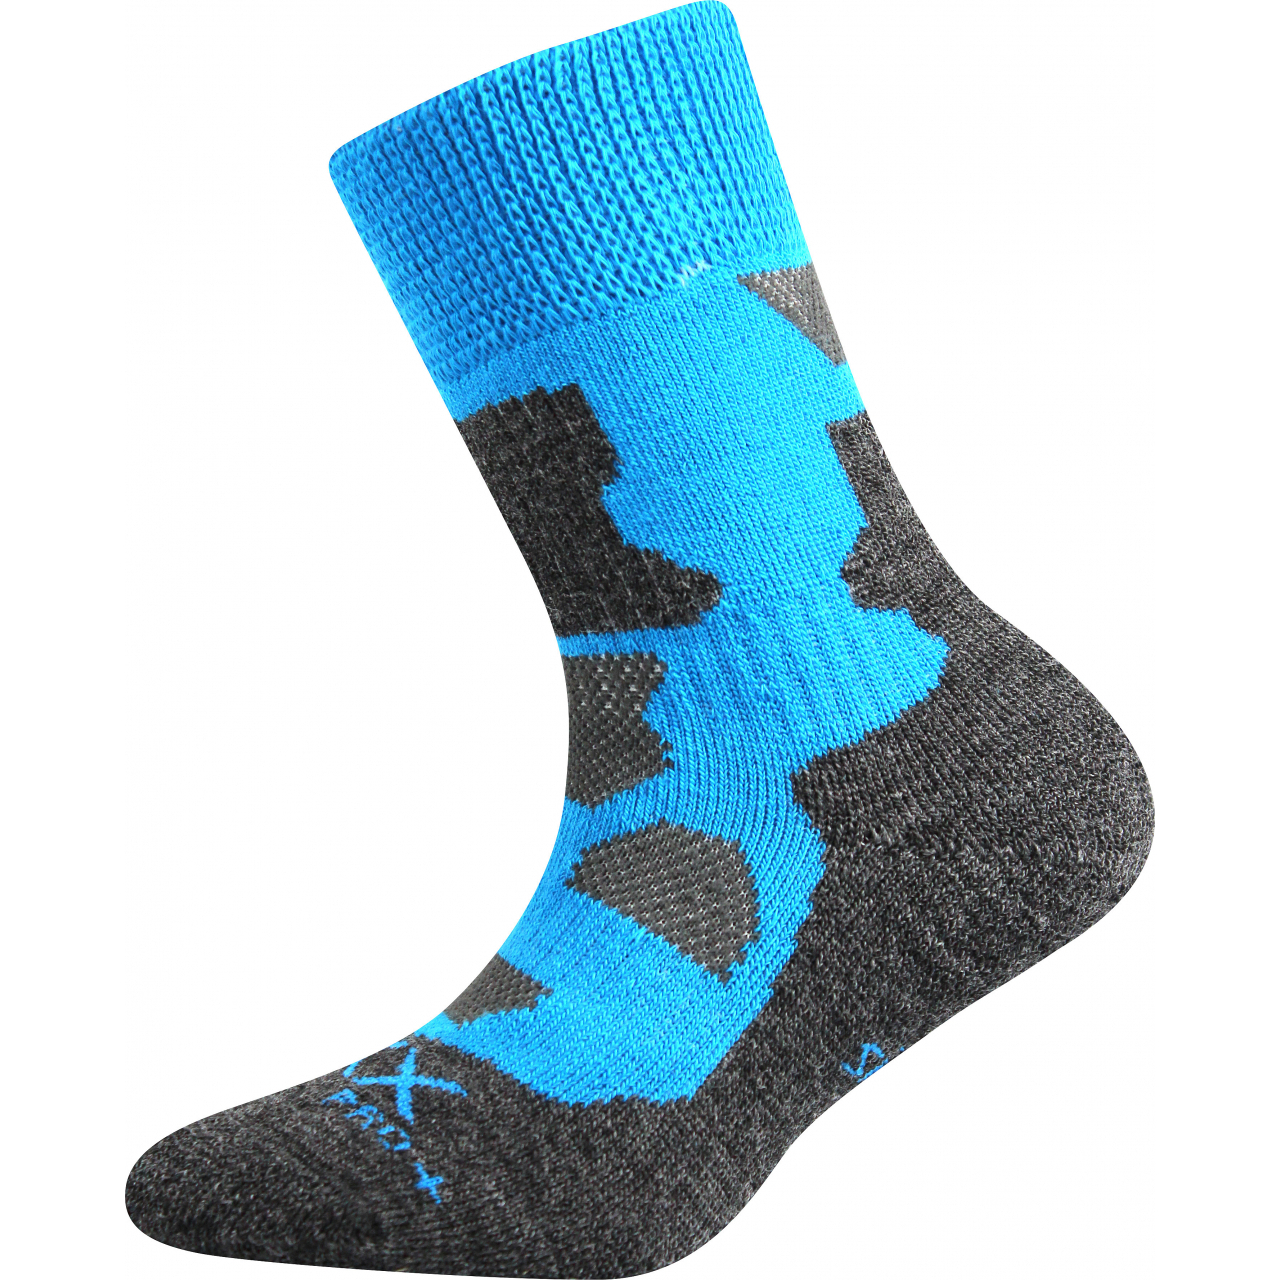 Ponožky dětské zimní Voxx Etrexík - modré-šedé, 30-34